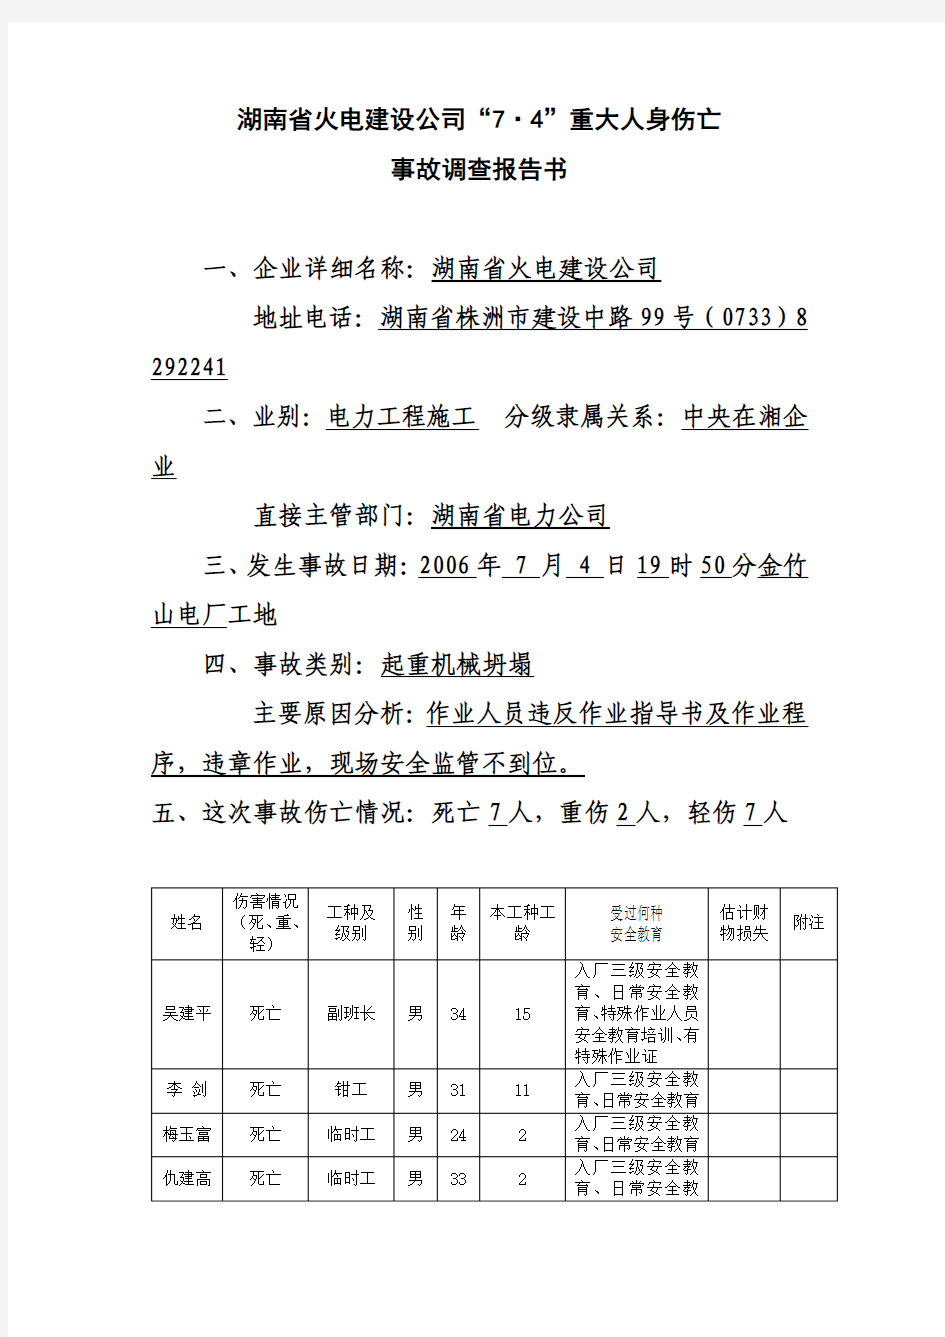 湖南省火电建设公司“7.4”重大人身伤亡事故调查报告